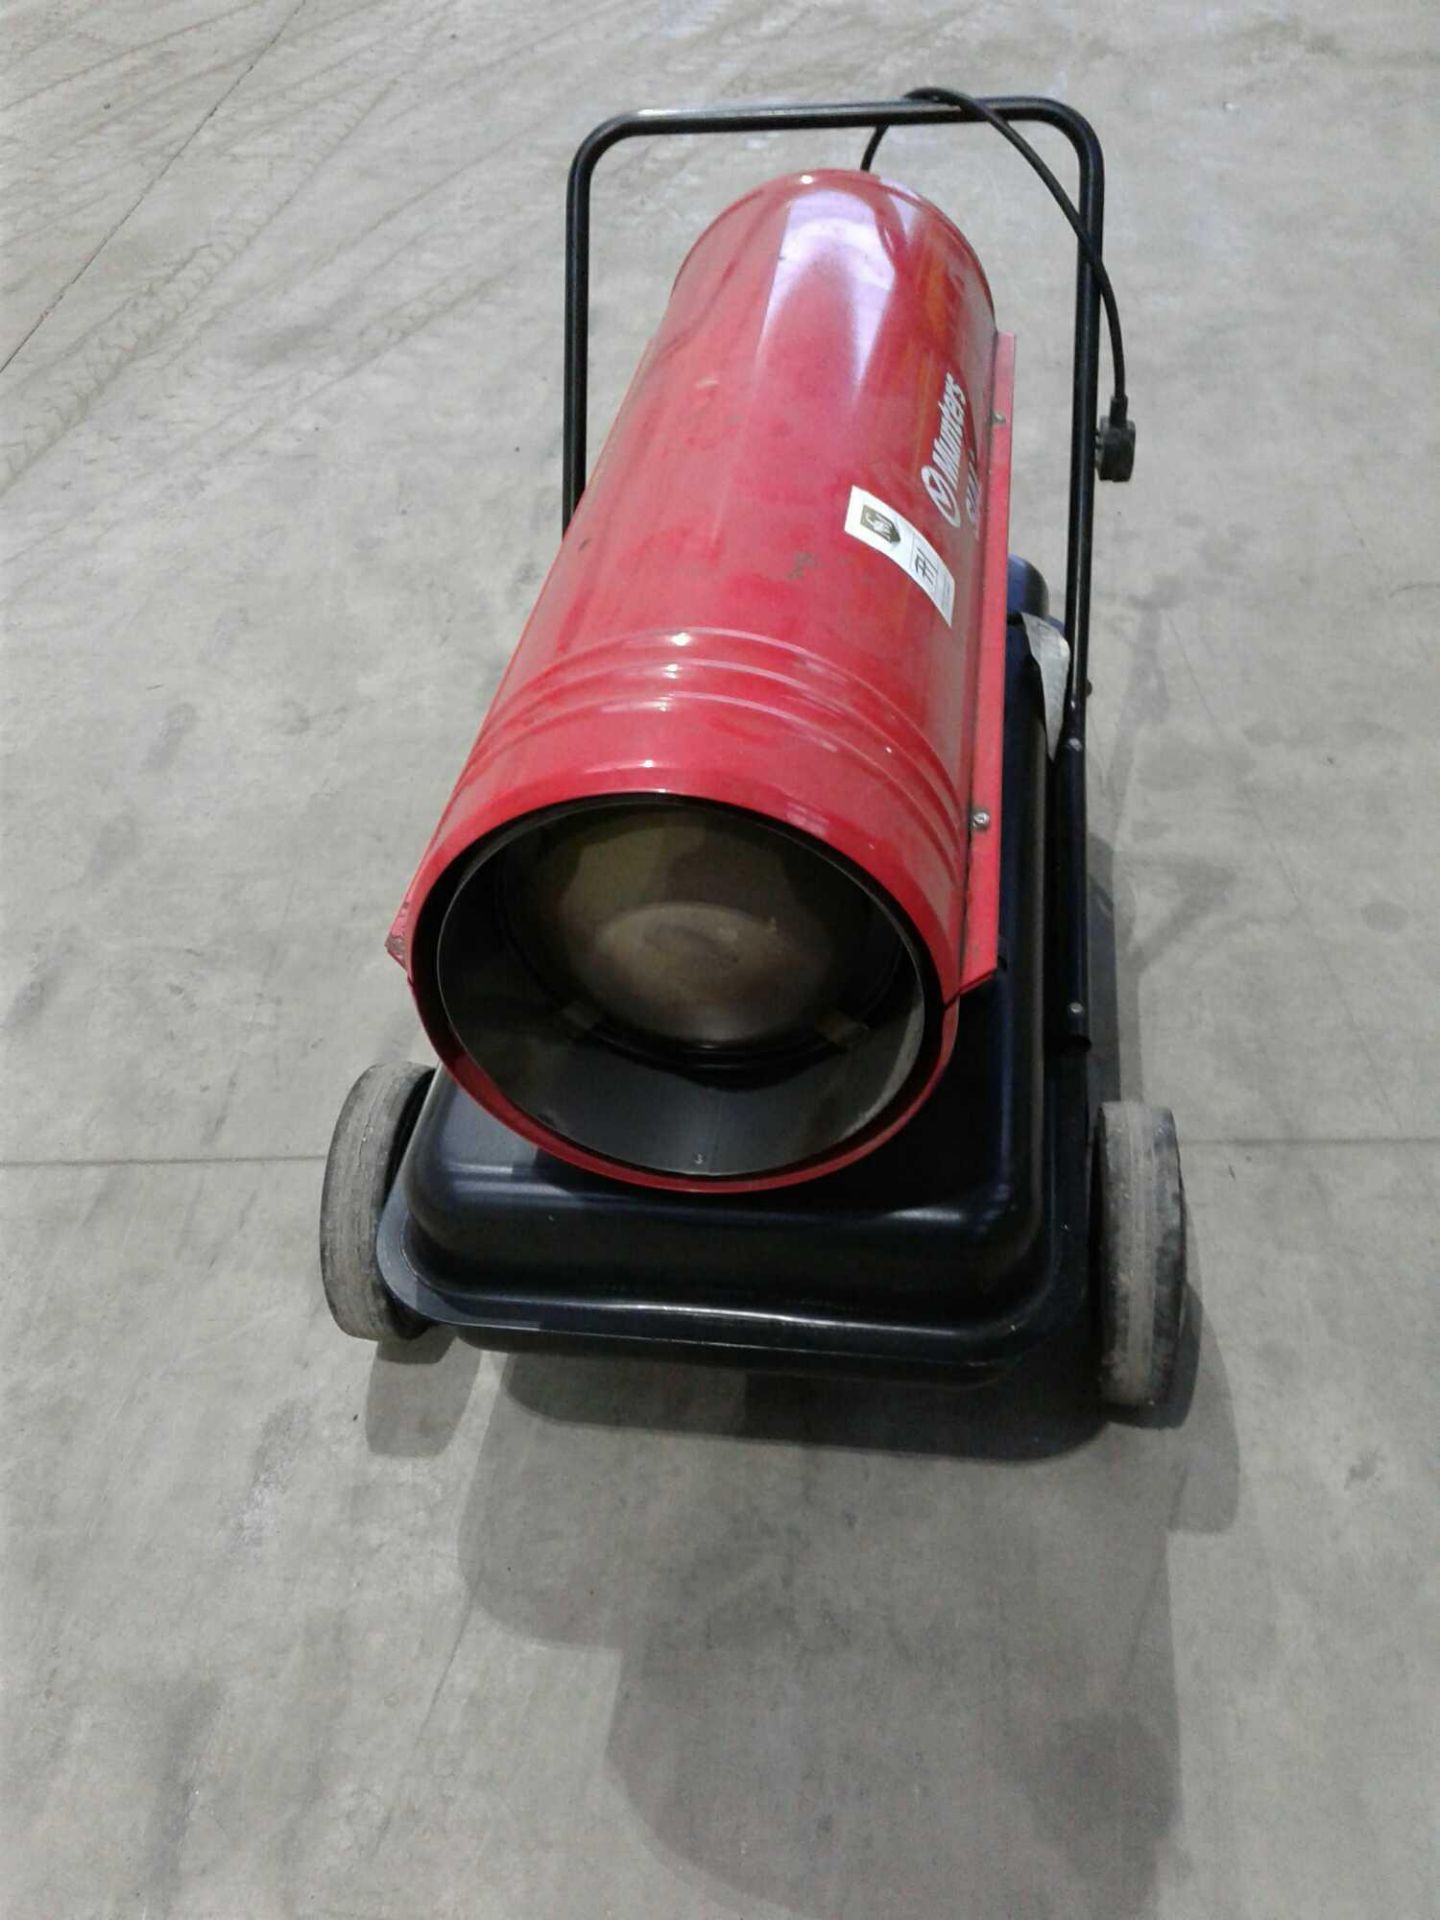 Munters diesel space heater - Image 2 of 2